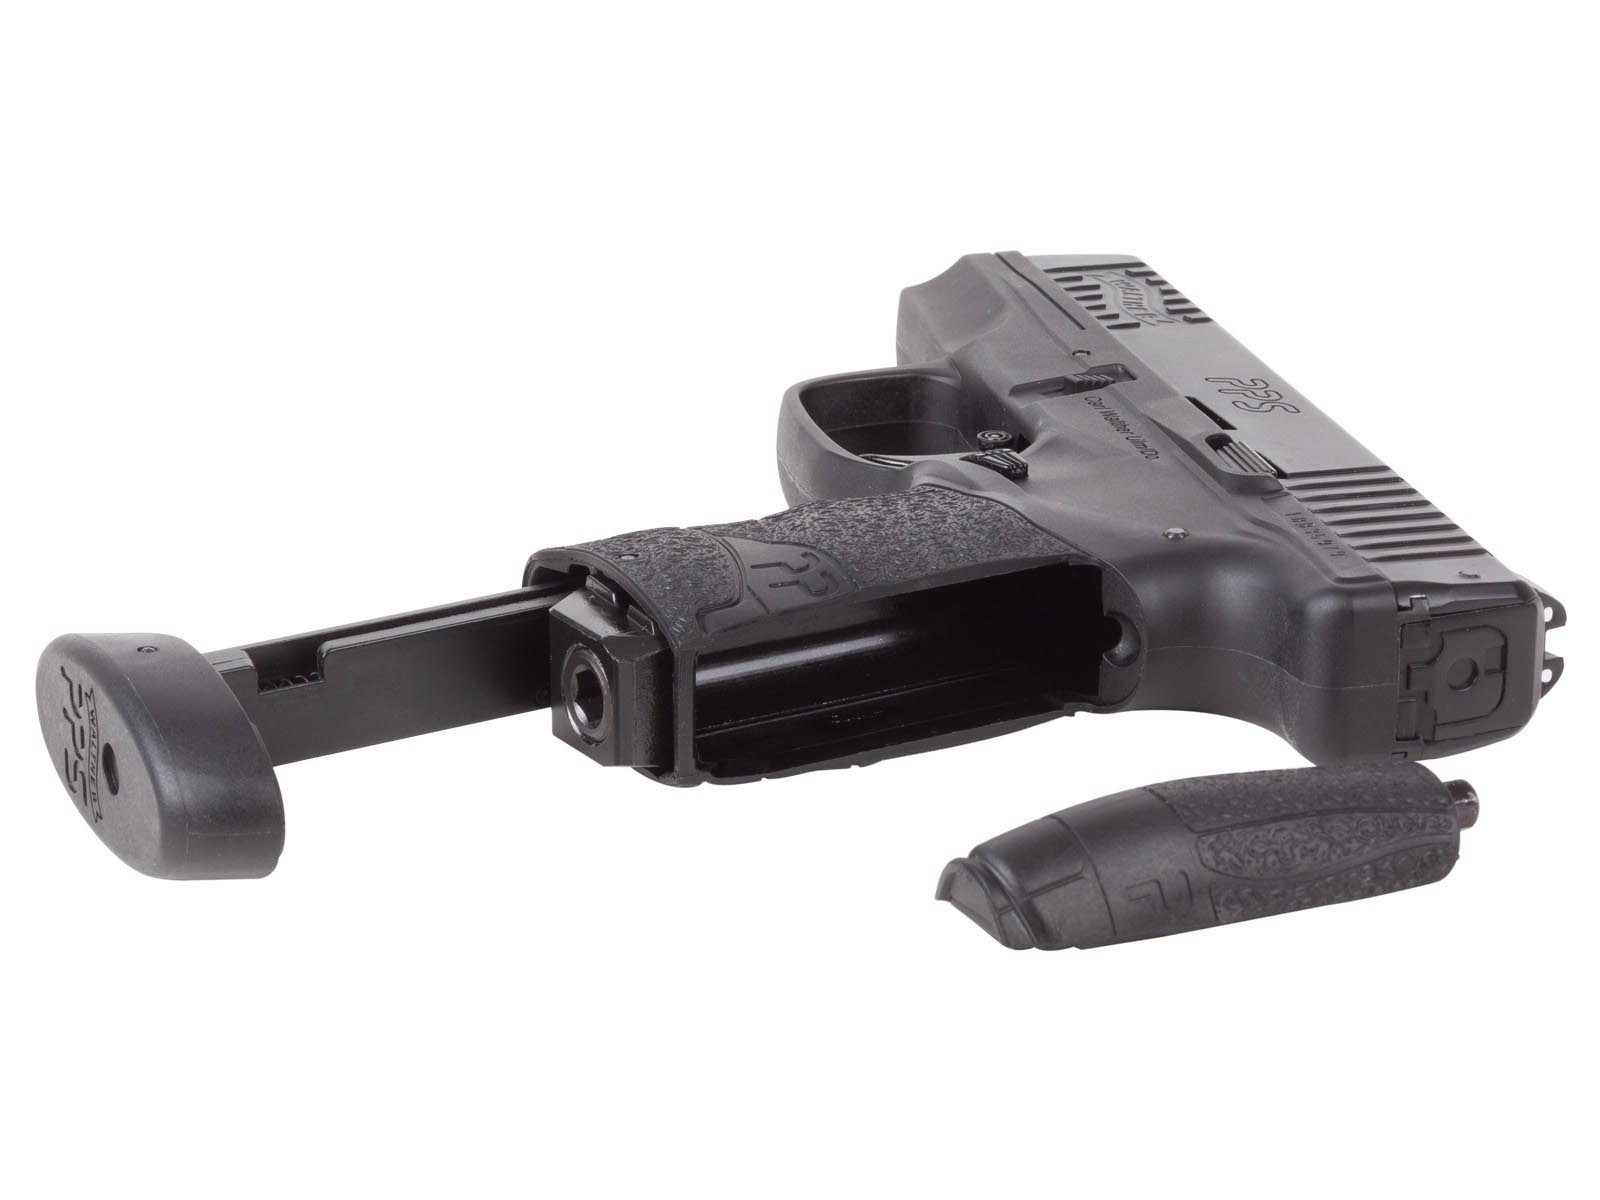 balines y CO2 Pistola de perdigones Bolas BBs de Acero maletín Walther PPS blowback de Aire comprimido semiautomática 4,5mm Ecommur